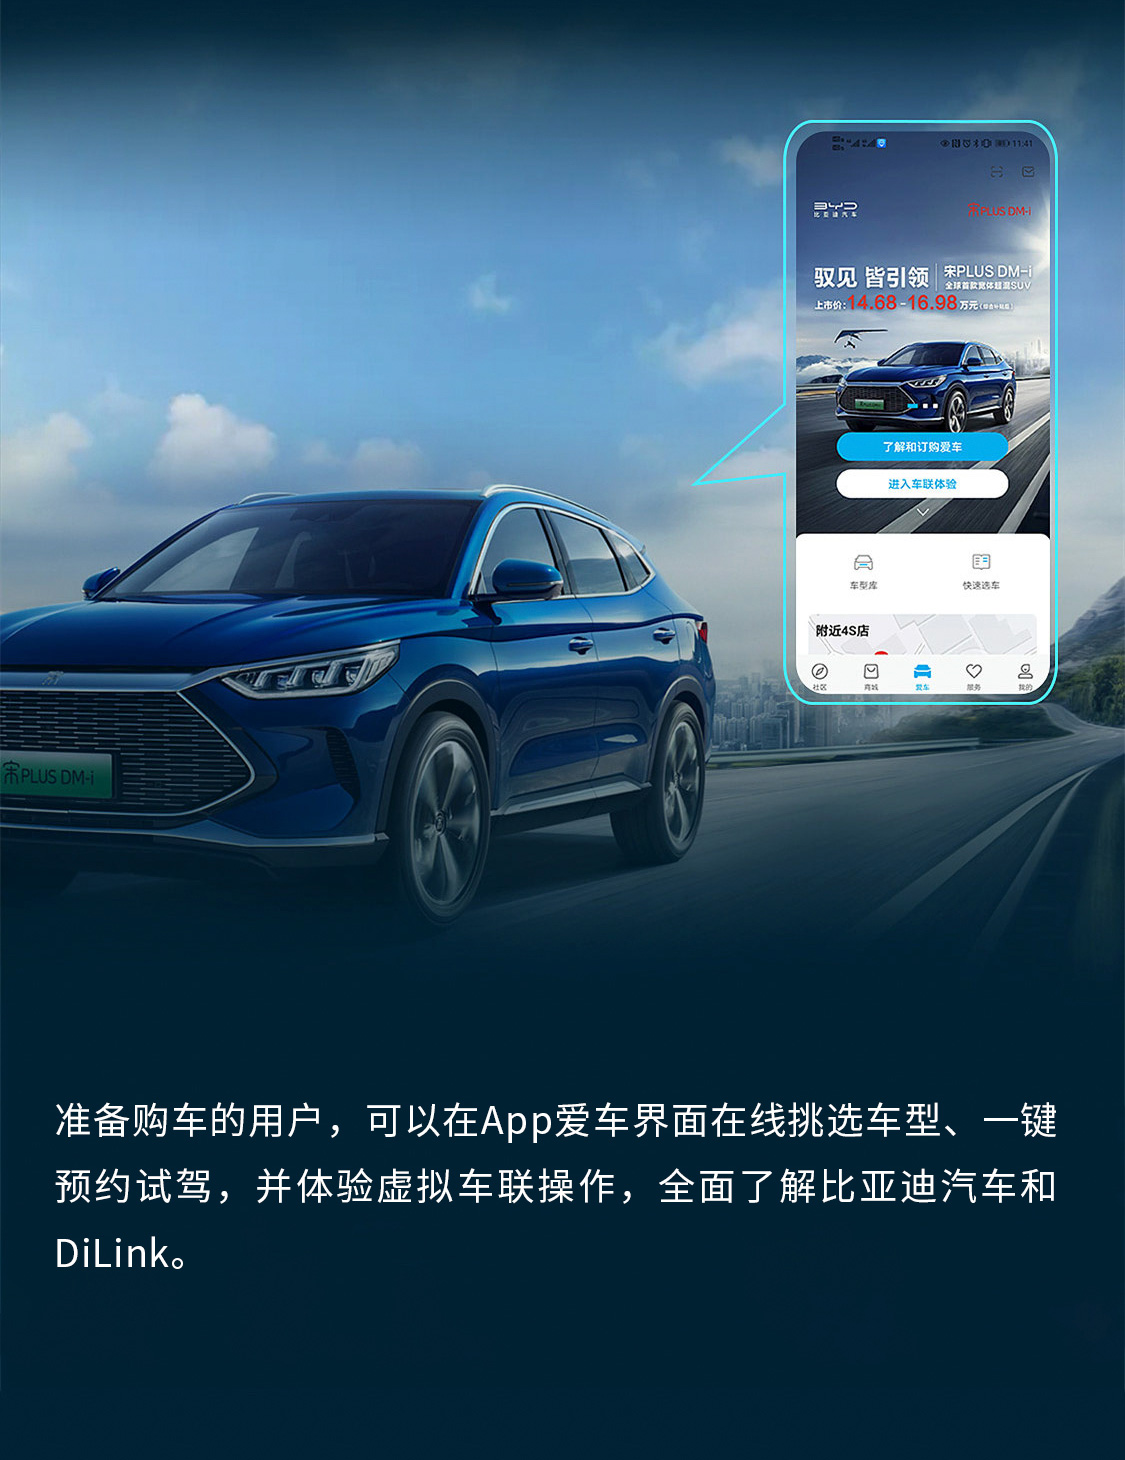 比亚迪汽车App正式上线 一键开启精彩车生活